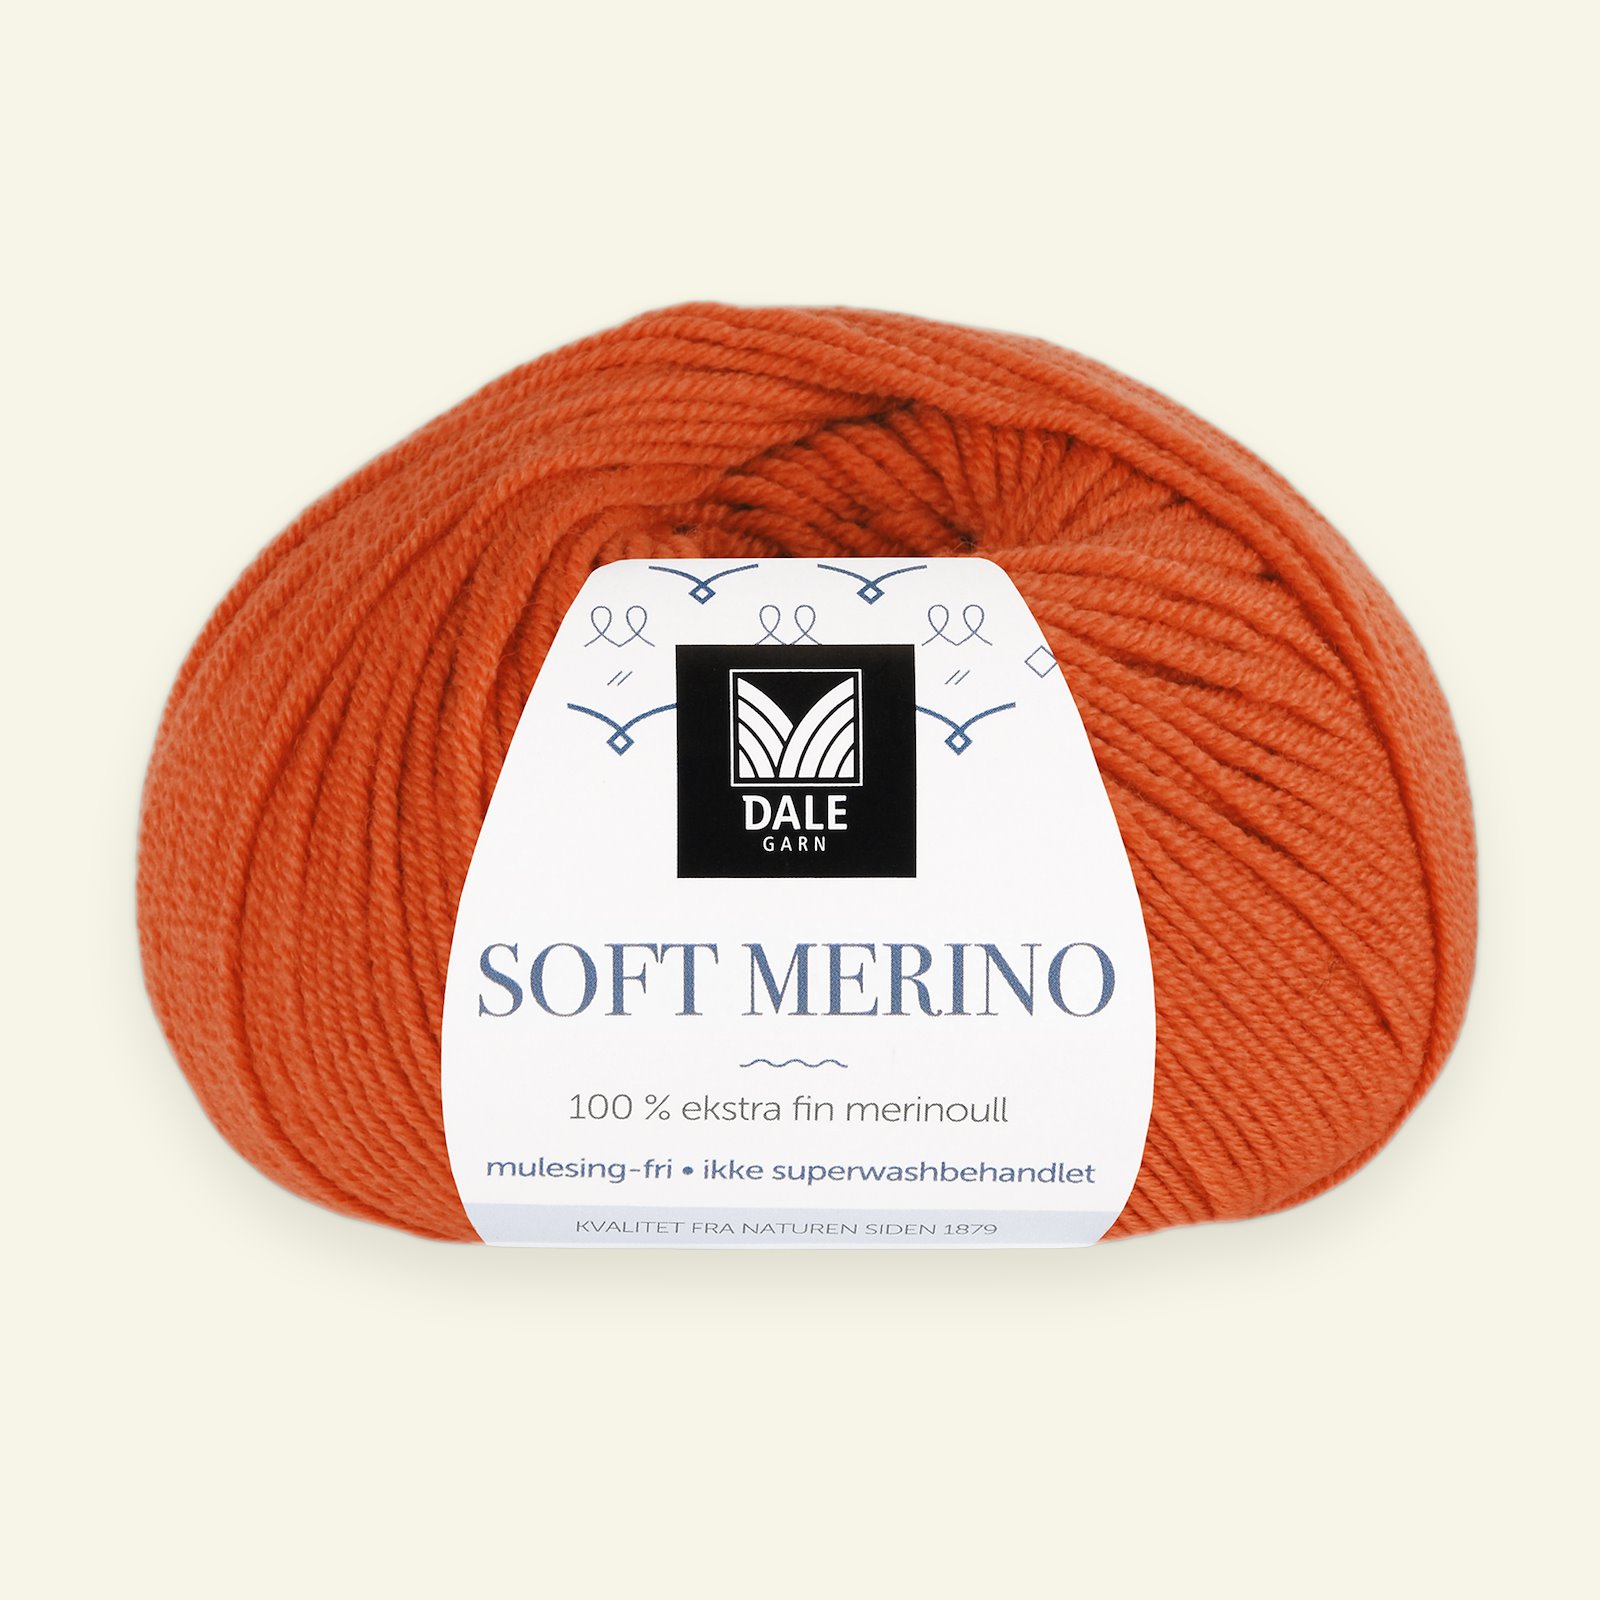 Dale Garn, 100% extra fine merino wool yarn, "Soft Merino", orange (3033) 90000354_pack